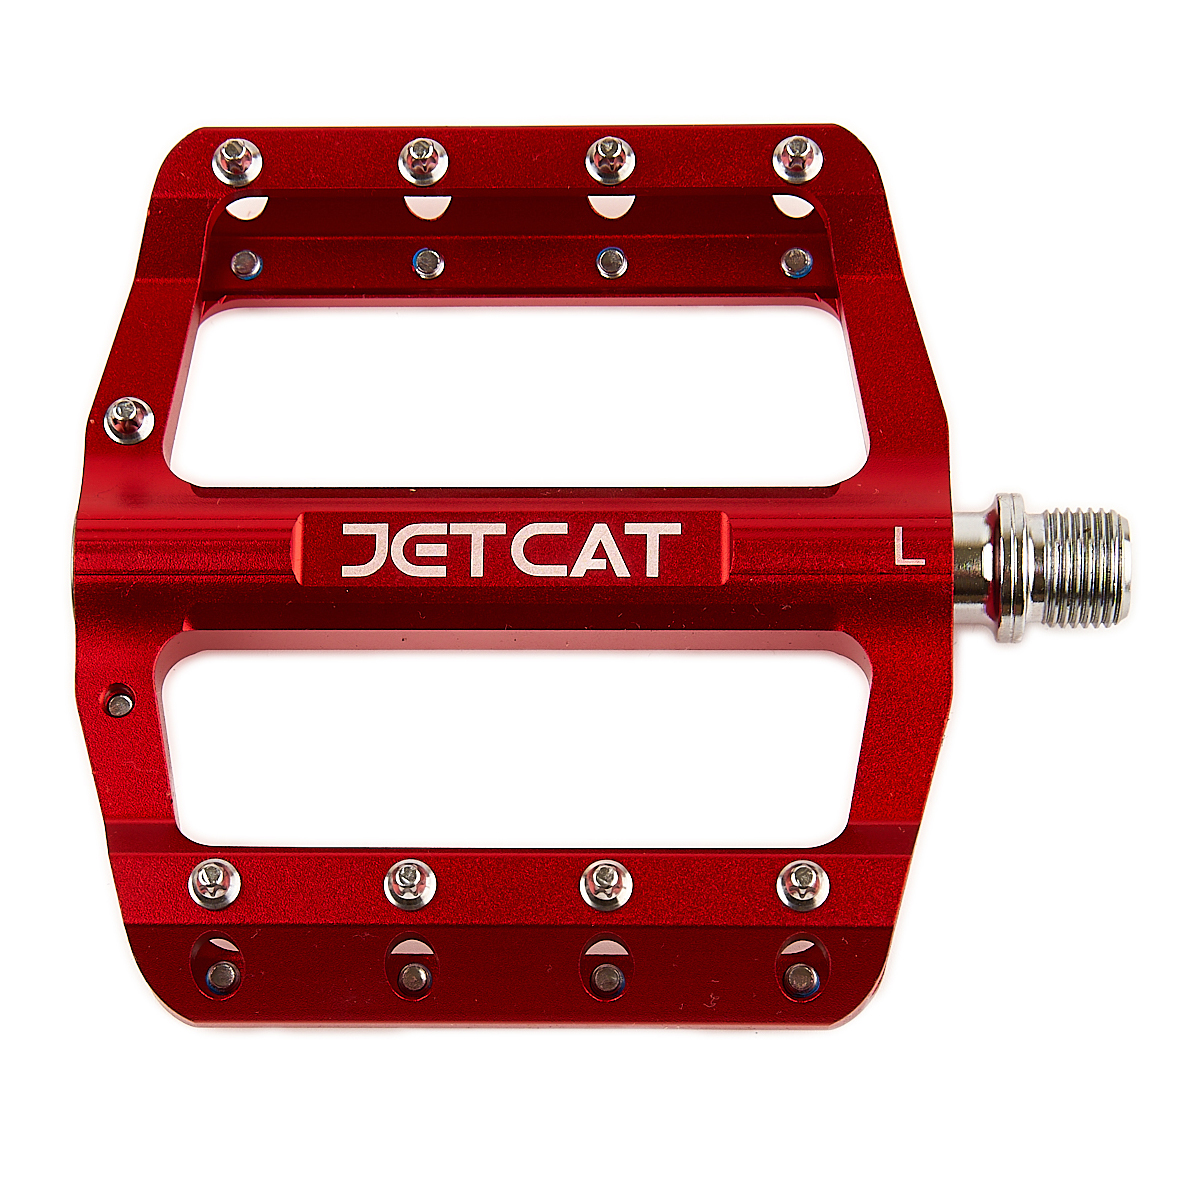 Педали велосипедные JETCAT Pro 106 алюминиевые 3 промподшипника красные